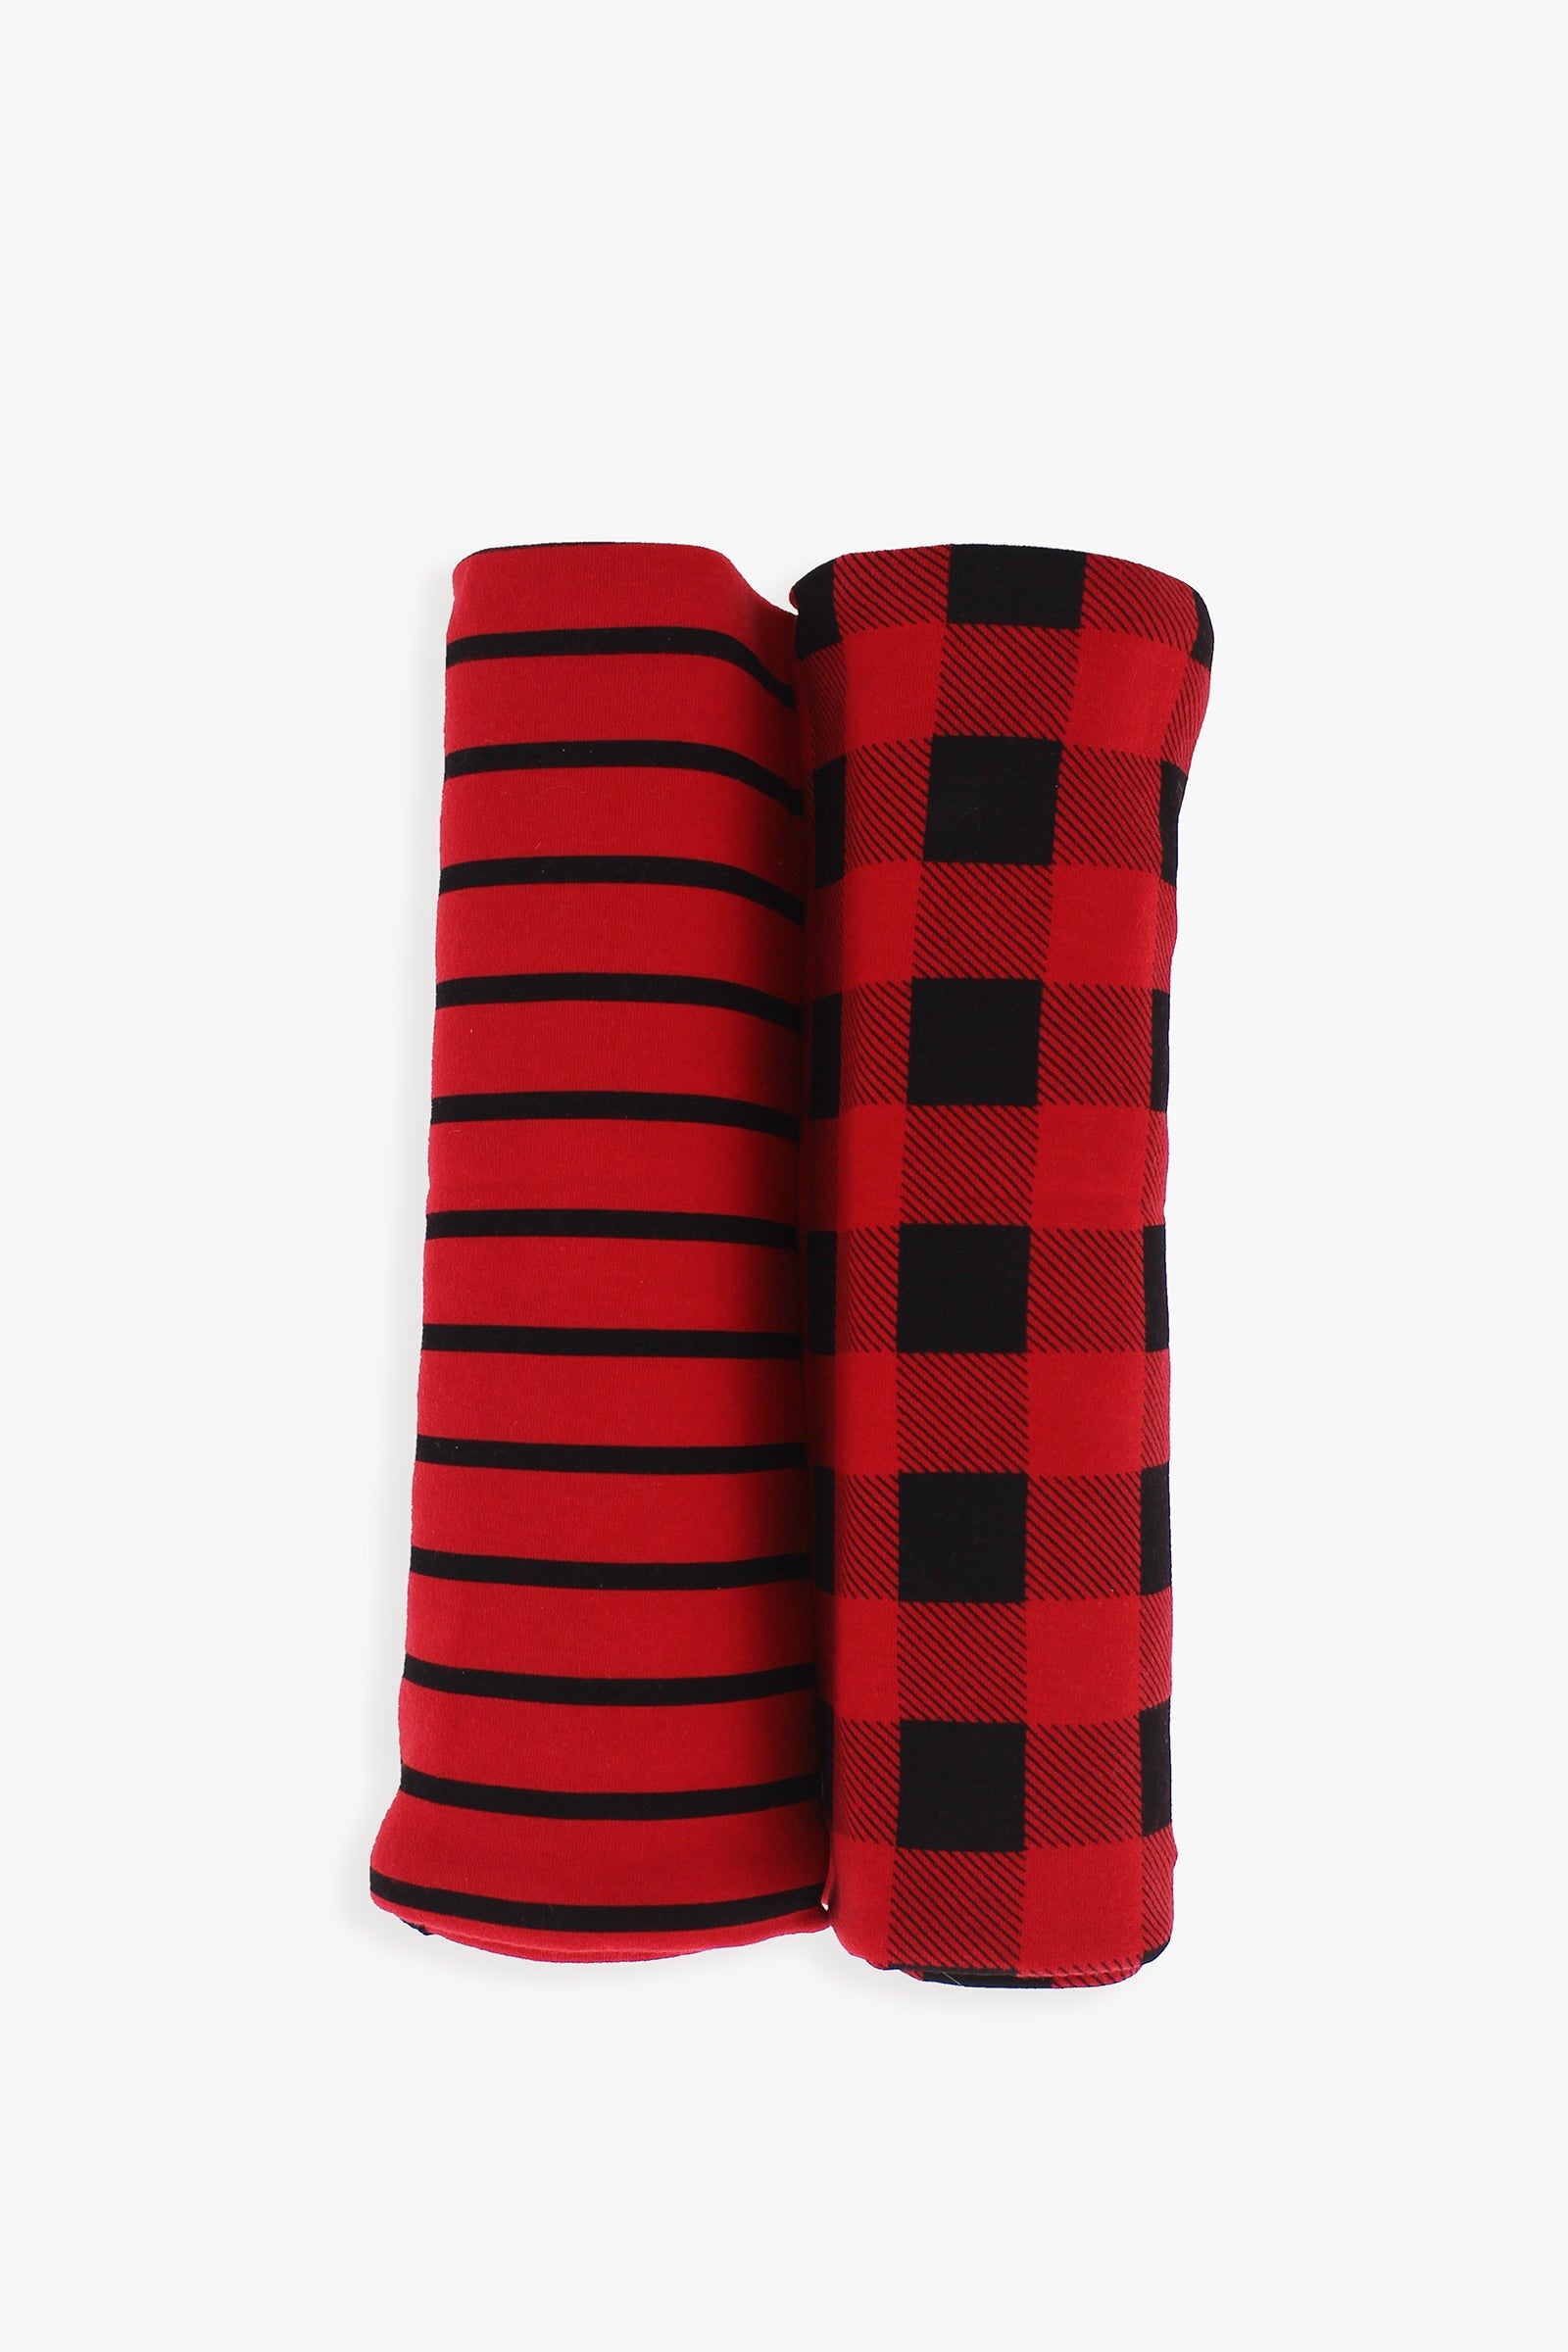 Snugabye 2-Pack Baby Red & Black Buffalo Plaid Swaddle Blanket